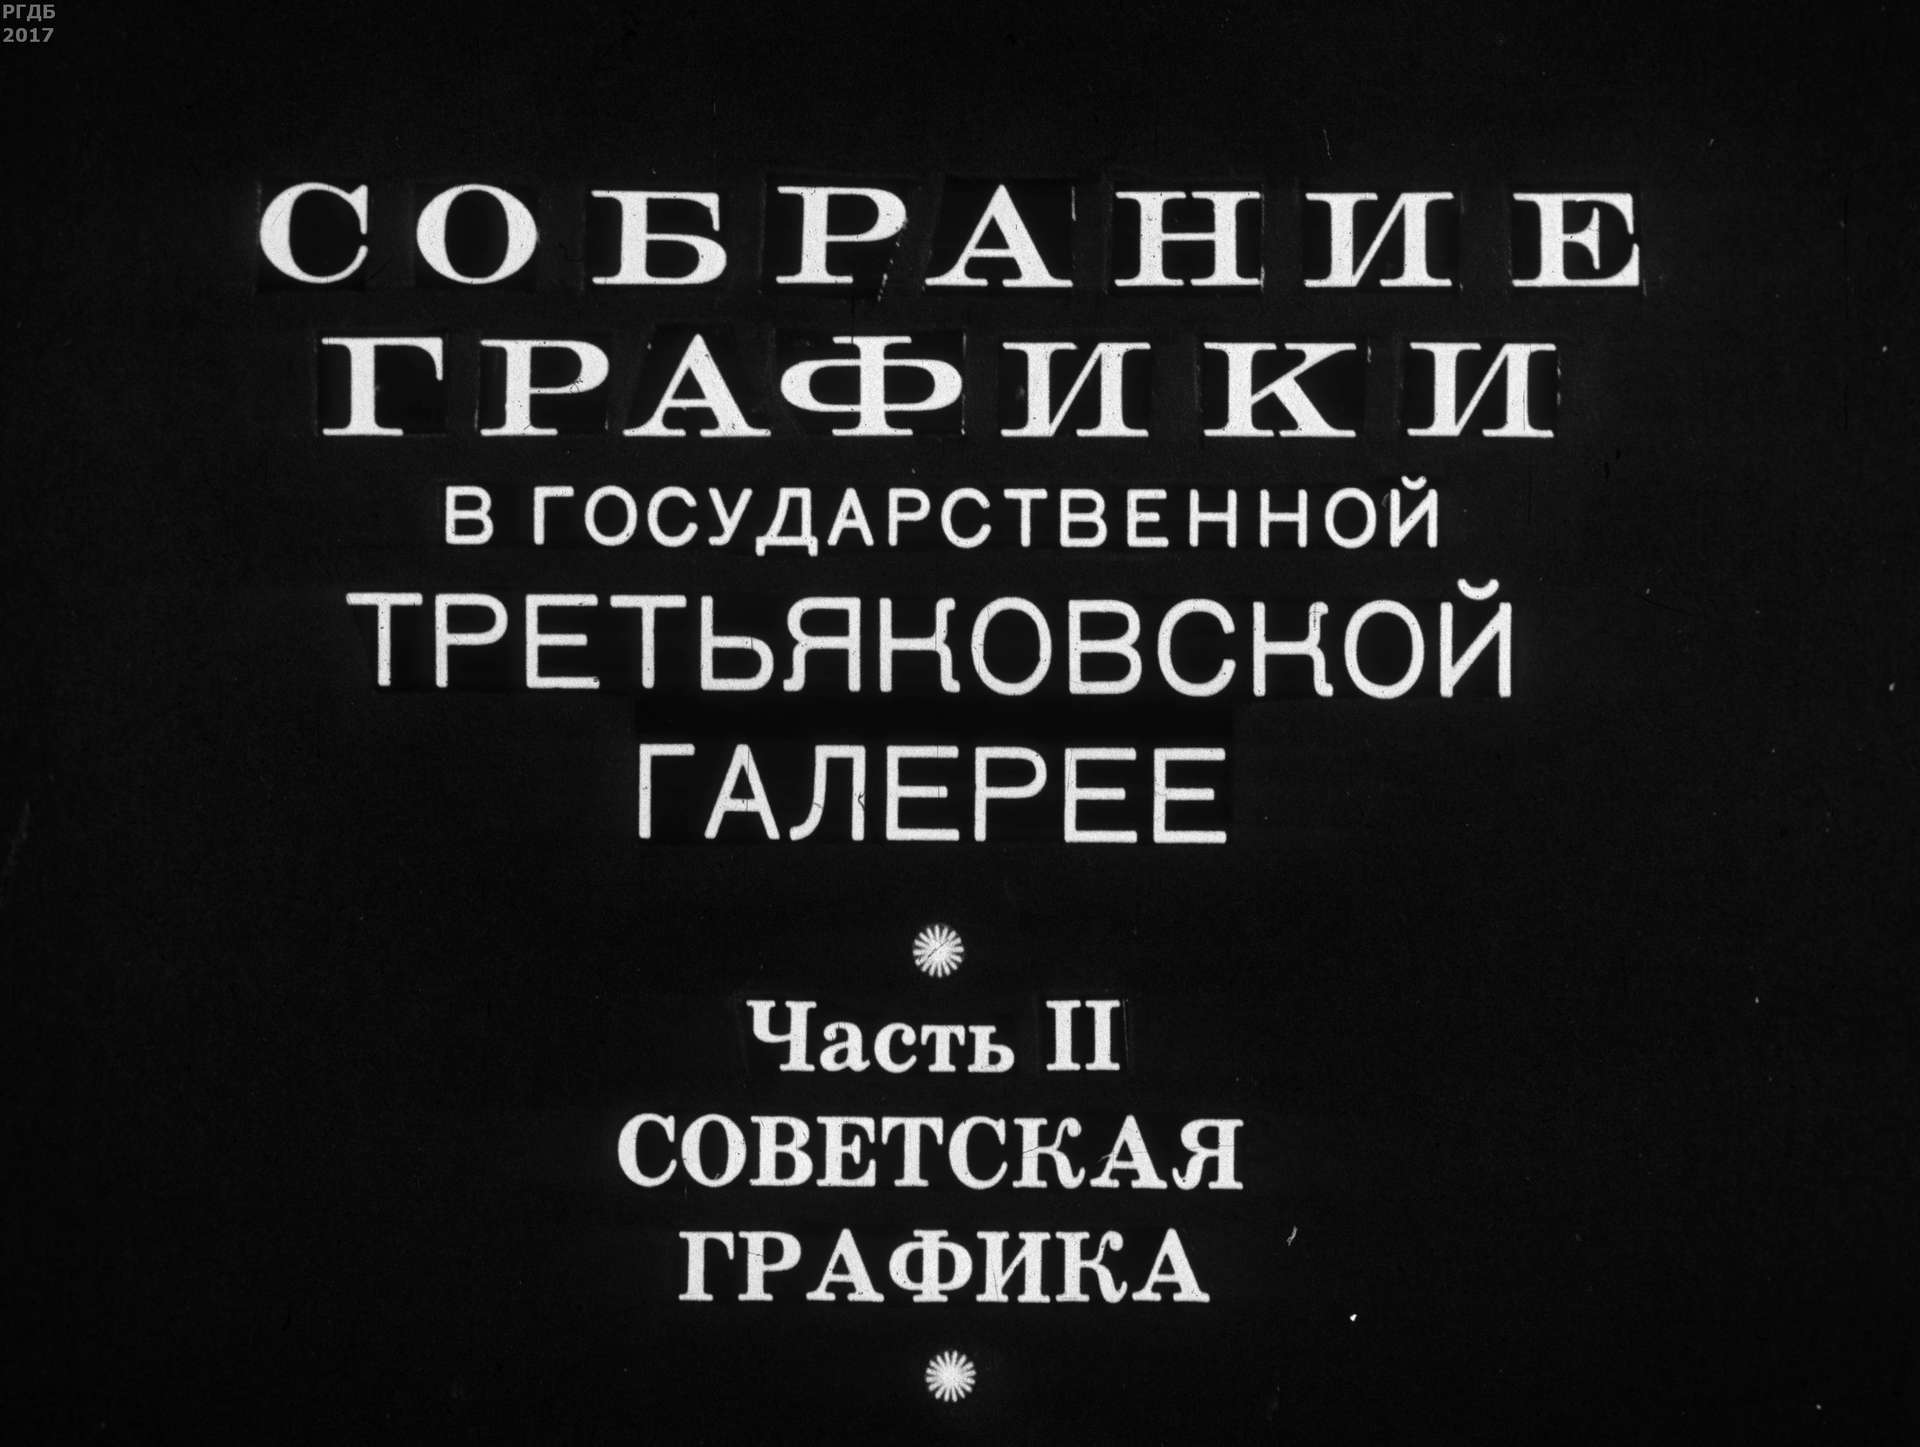 Собрание графики в Государственной Третьяковской галерее. Ч.2: Советская графика